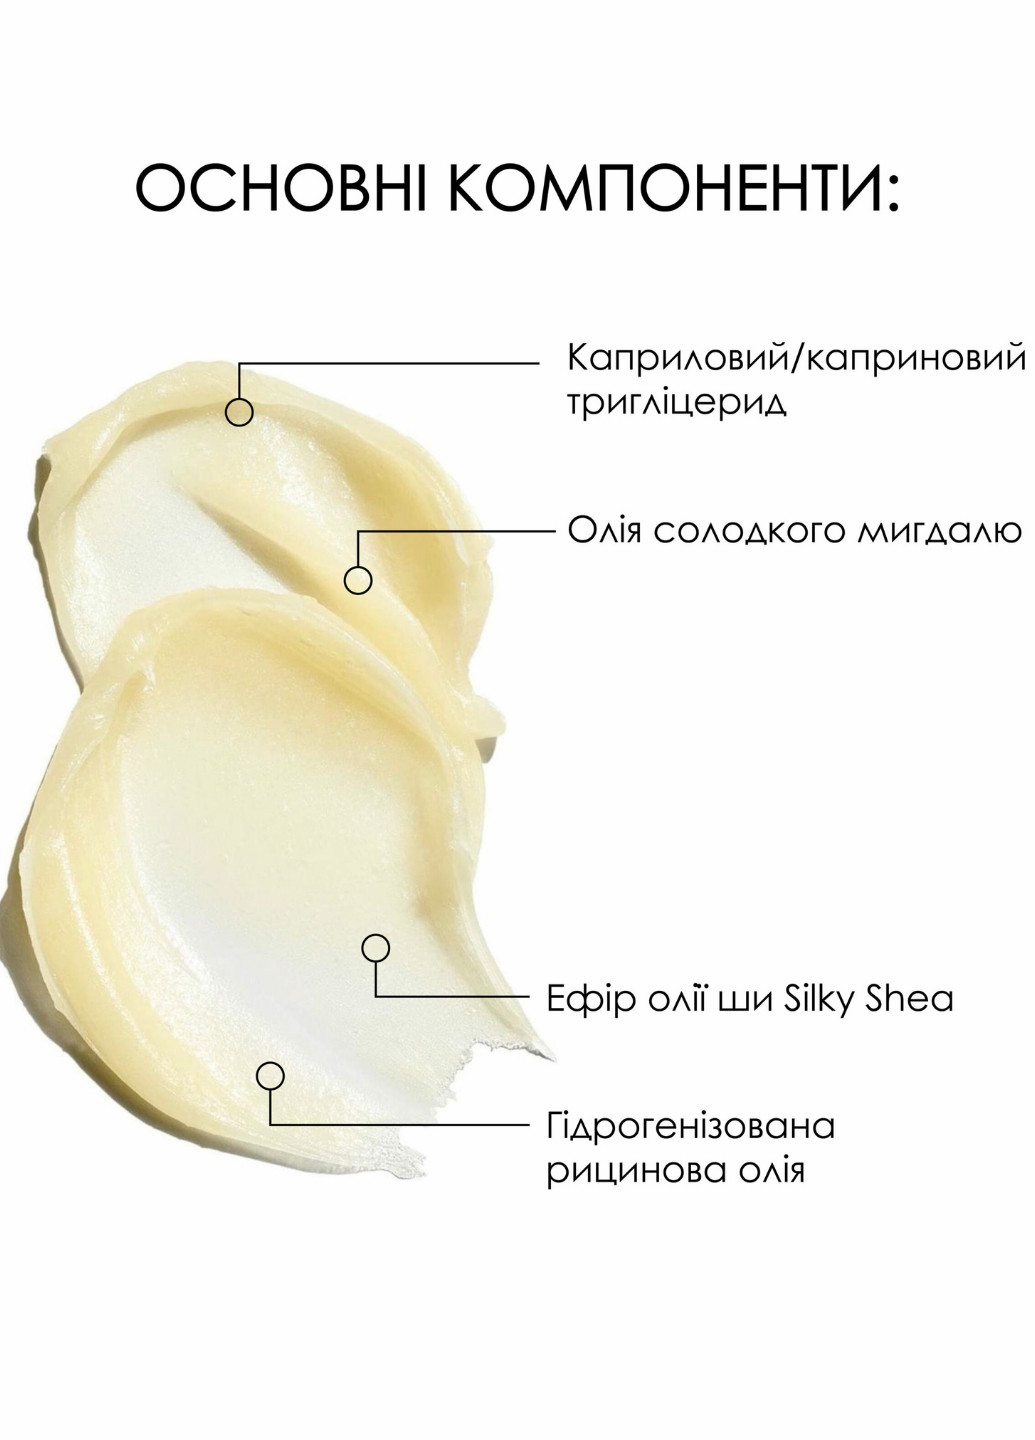 Очищувальний бальзам для зняття макіяжу для всіх типів шкіри Cleansing Balm Almond + Shea, 90 мл Hillary (276325522)